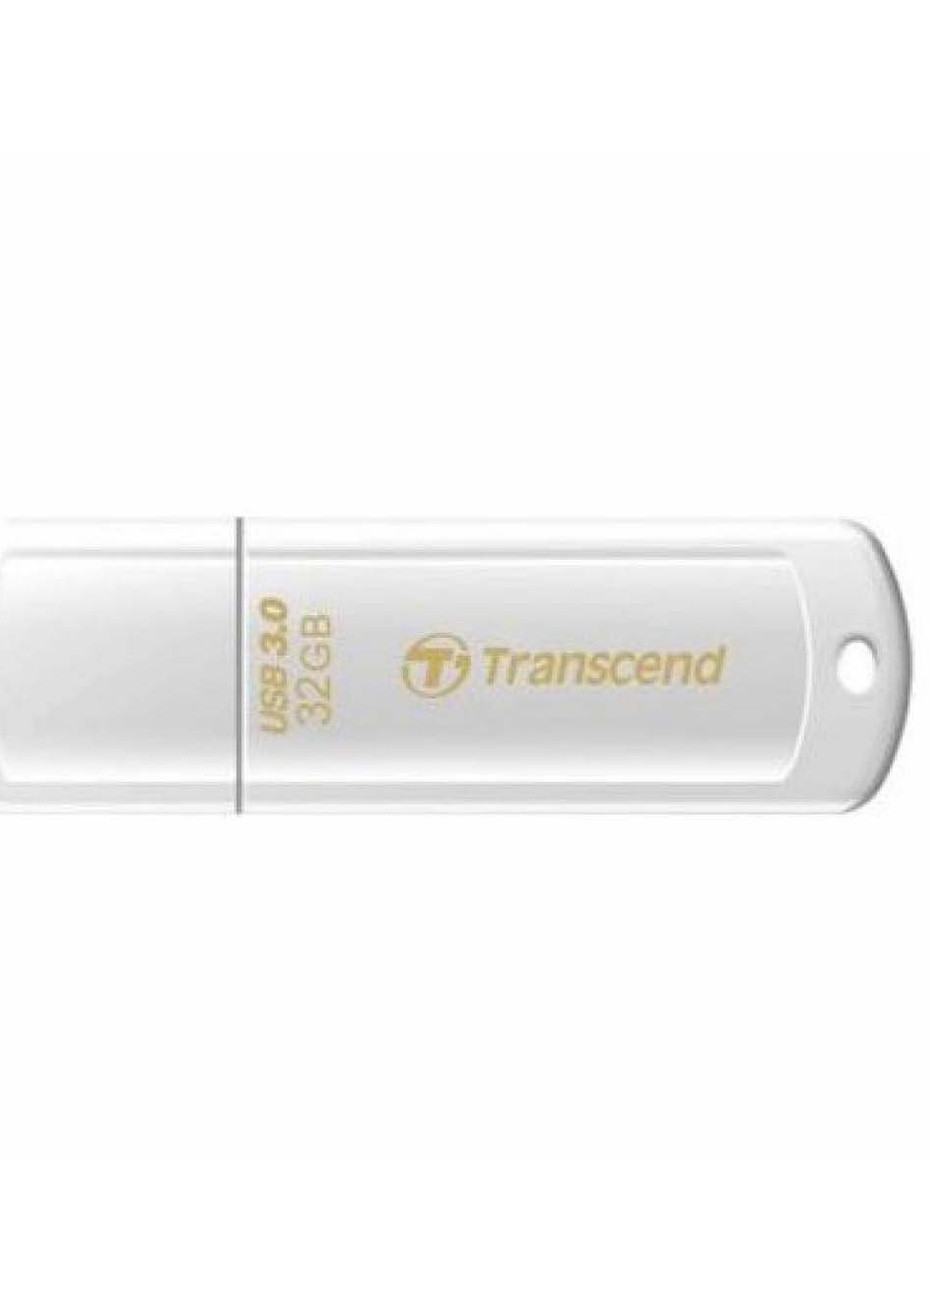 USB флеш накопитель (TS32GJF730) Transcend 32gb jetflash 730 (232750180)